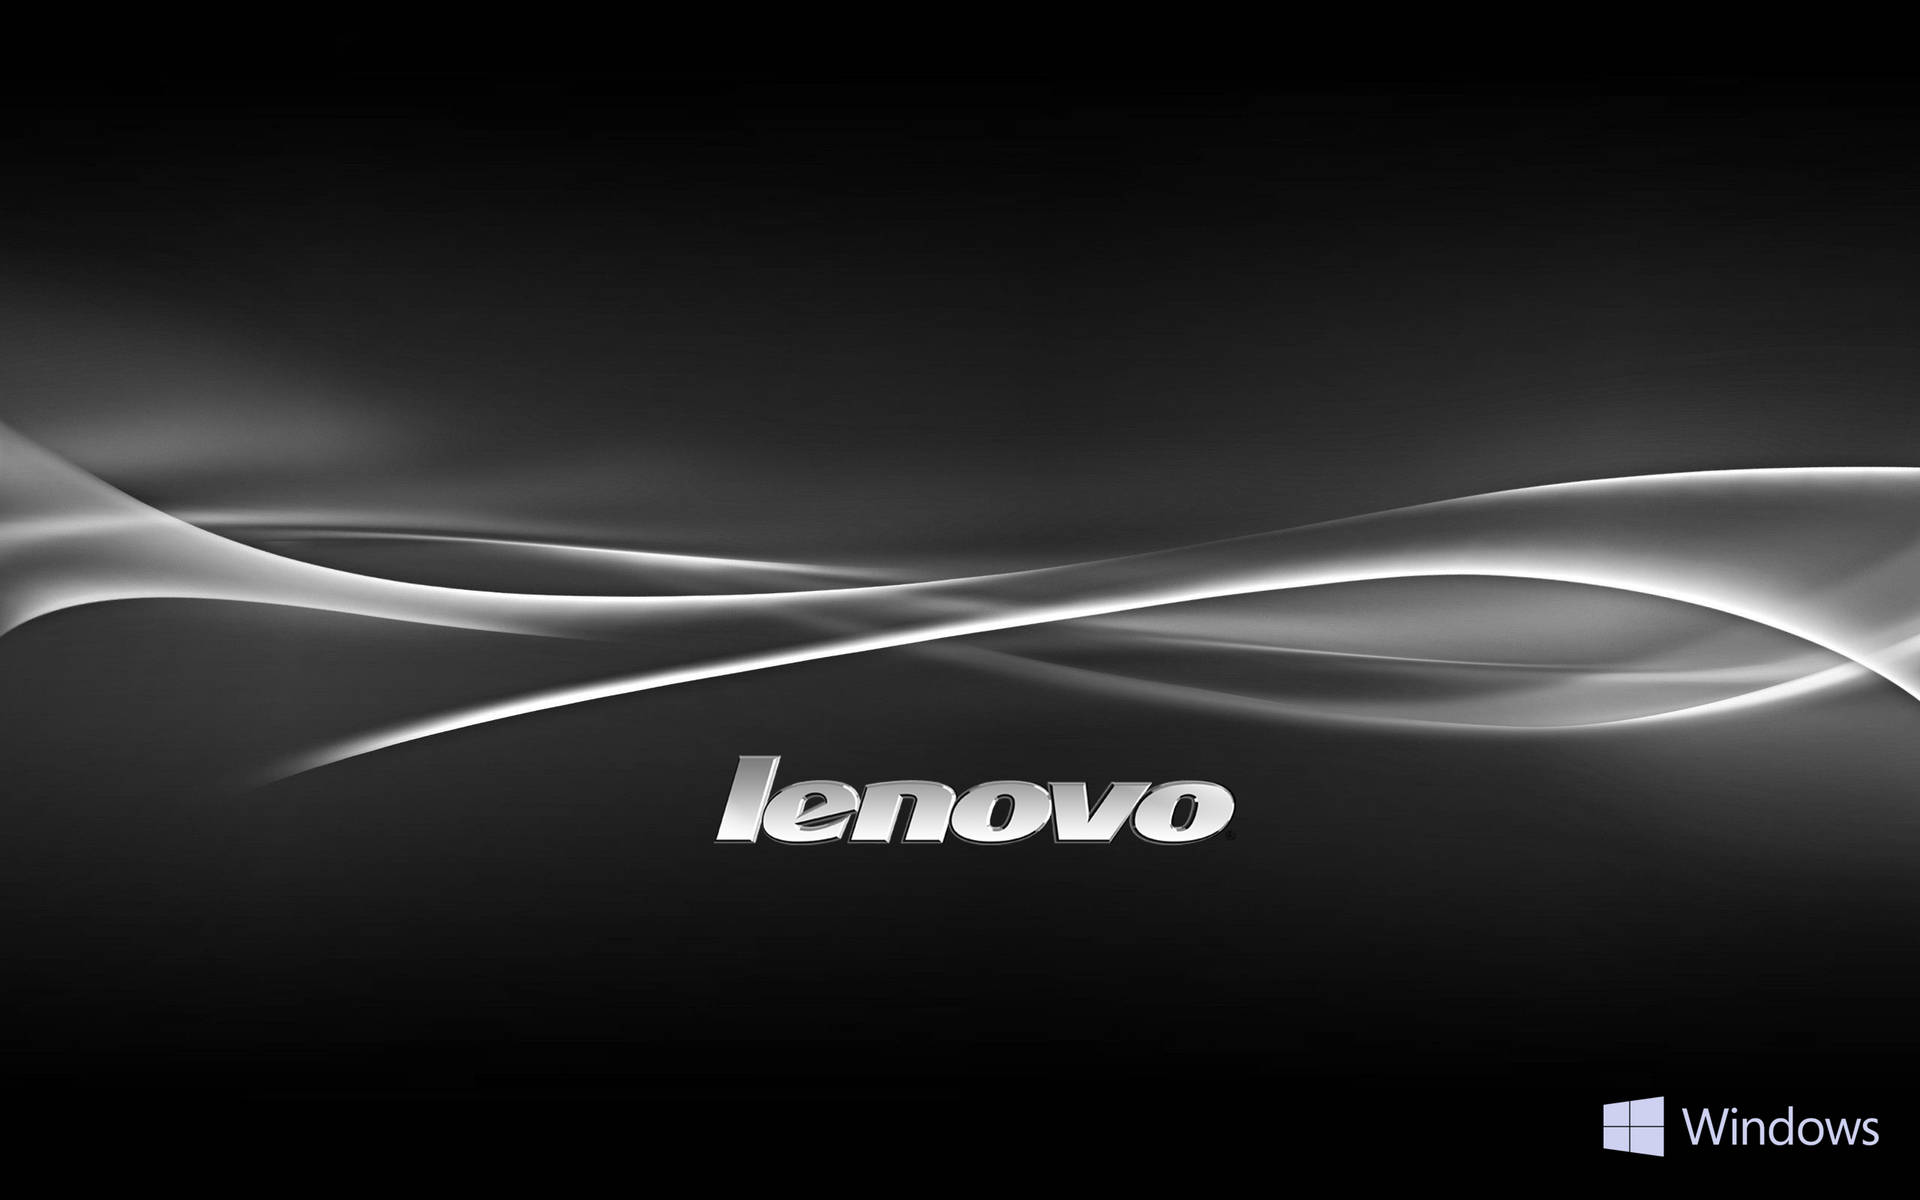 Líneascurvas Blancas Oficiales De Lenovo Fondo de pantalla